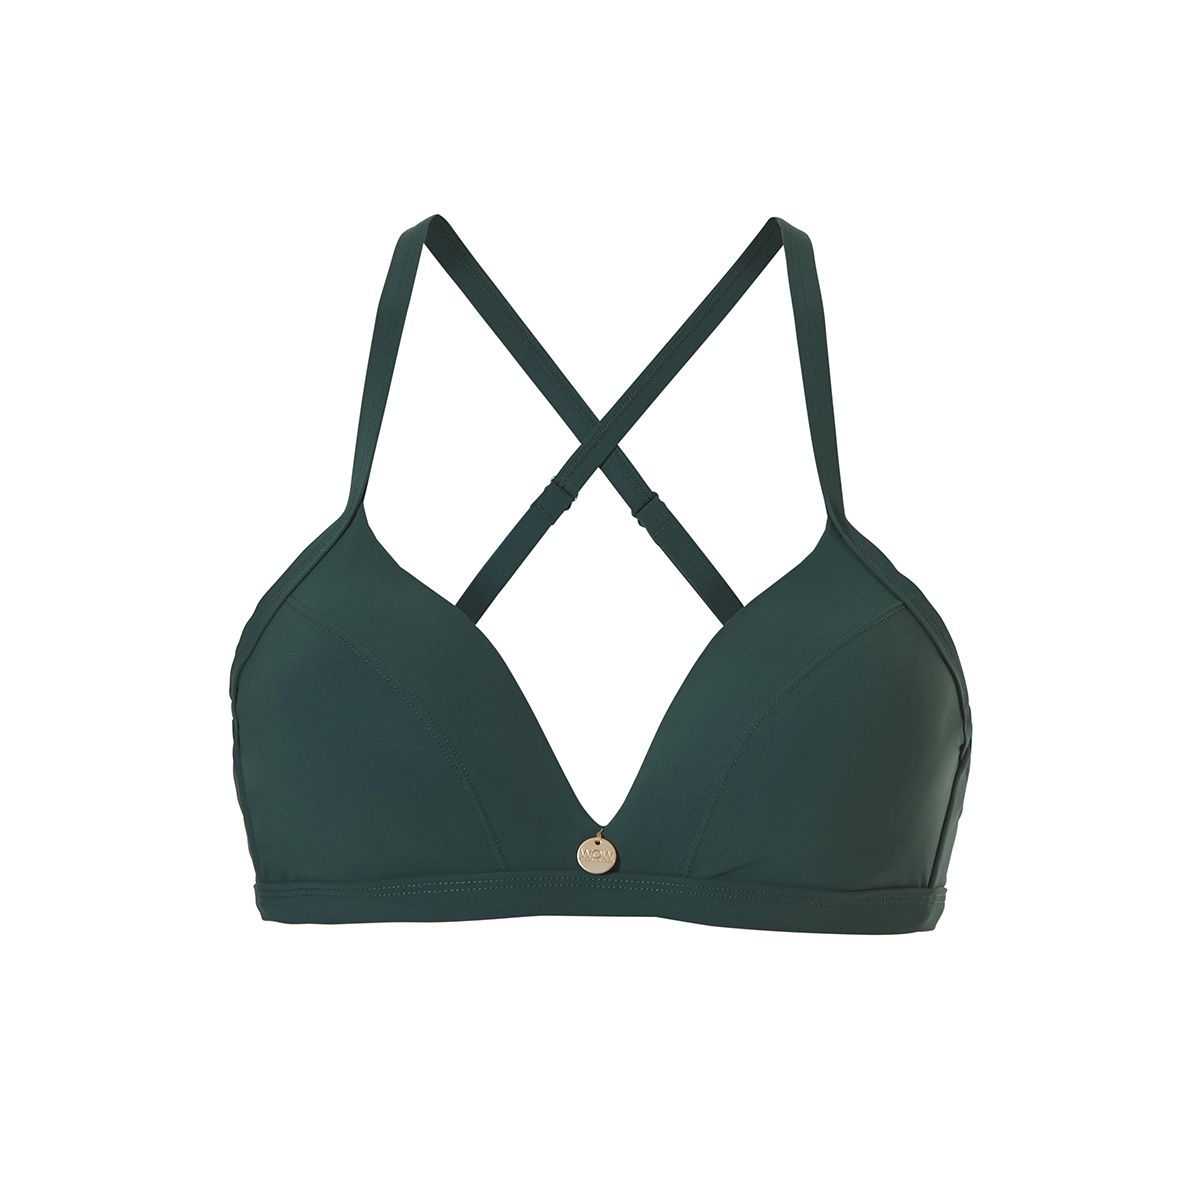 Groene triangel bikini top Wow - 201122095 2095